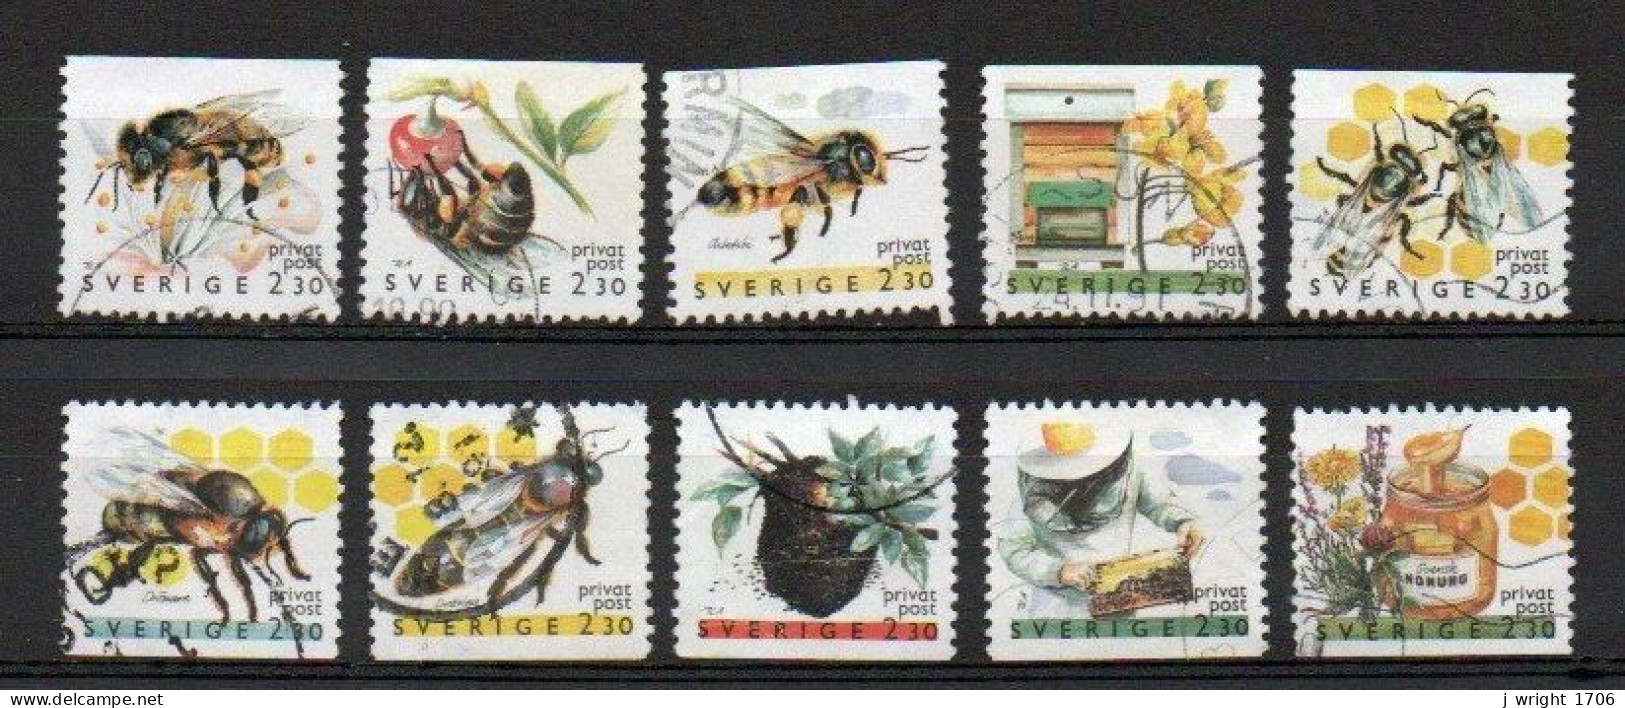 Sweden, 1990, Rebate Stamps/Honey Bees, Set, USED - Oblitérés